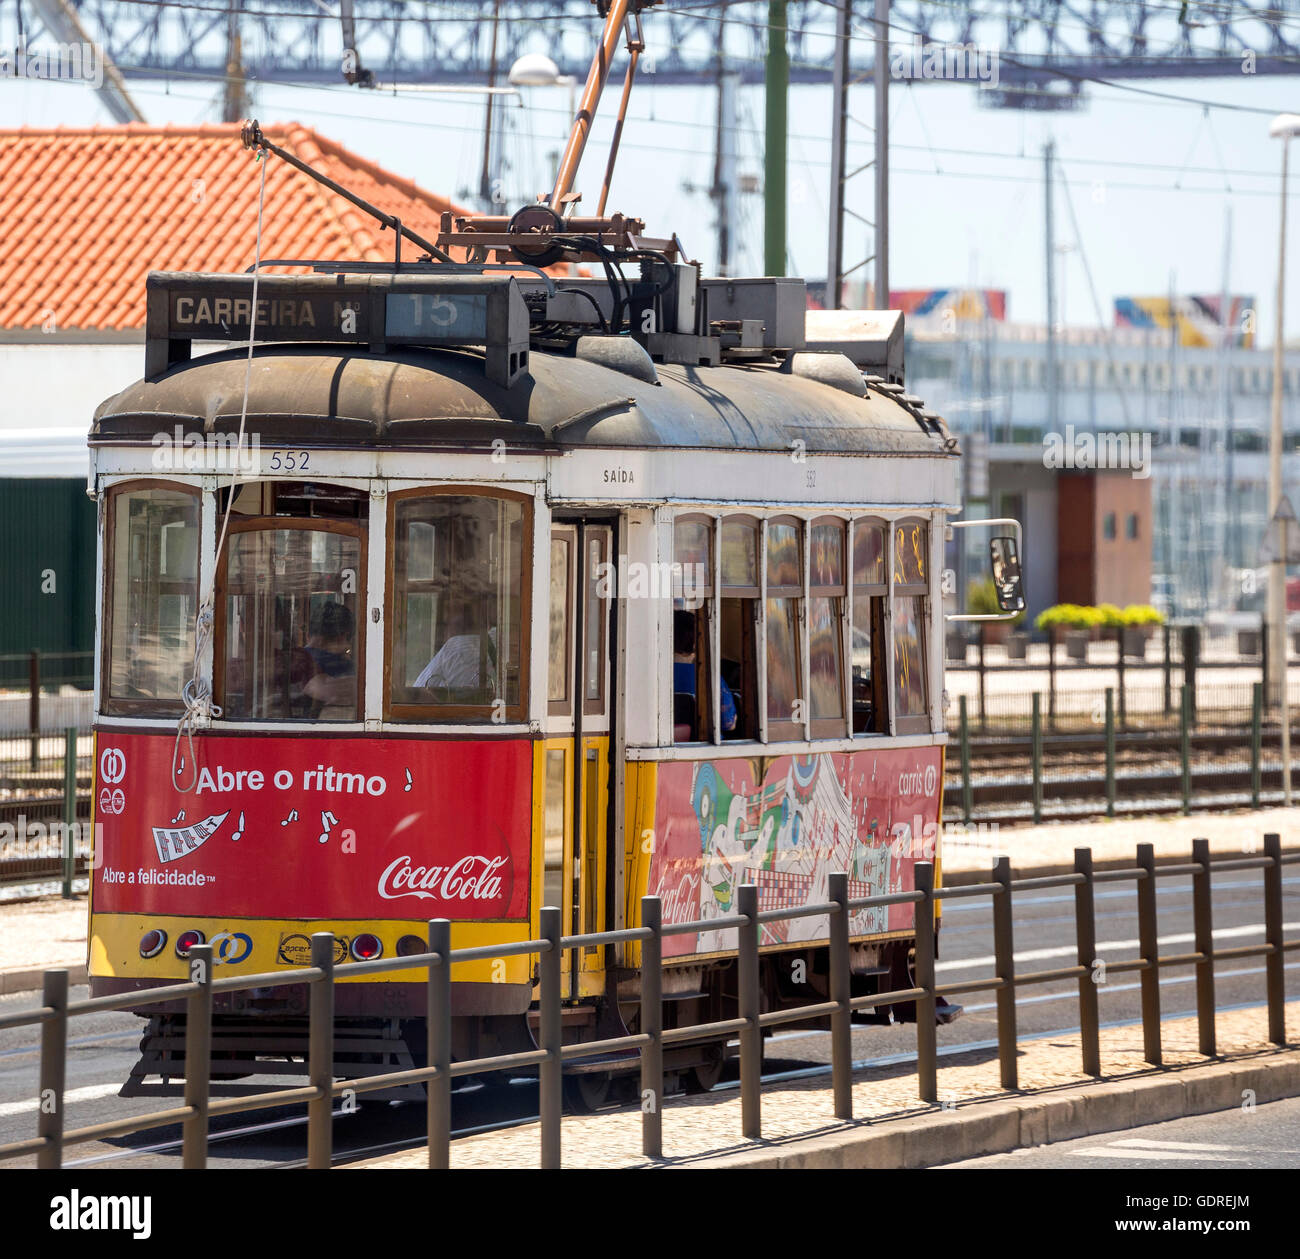 Tram colorati in Lisbona, Lisbona, distretto di Lisbona, Portogallo, Europa, viaggi, fotografia di viaggio Foto Stock